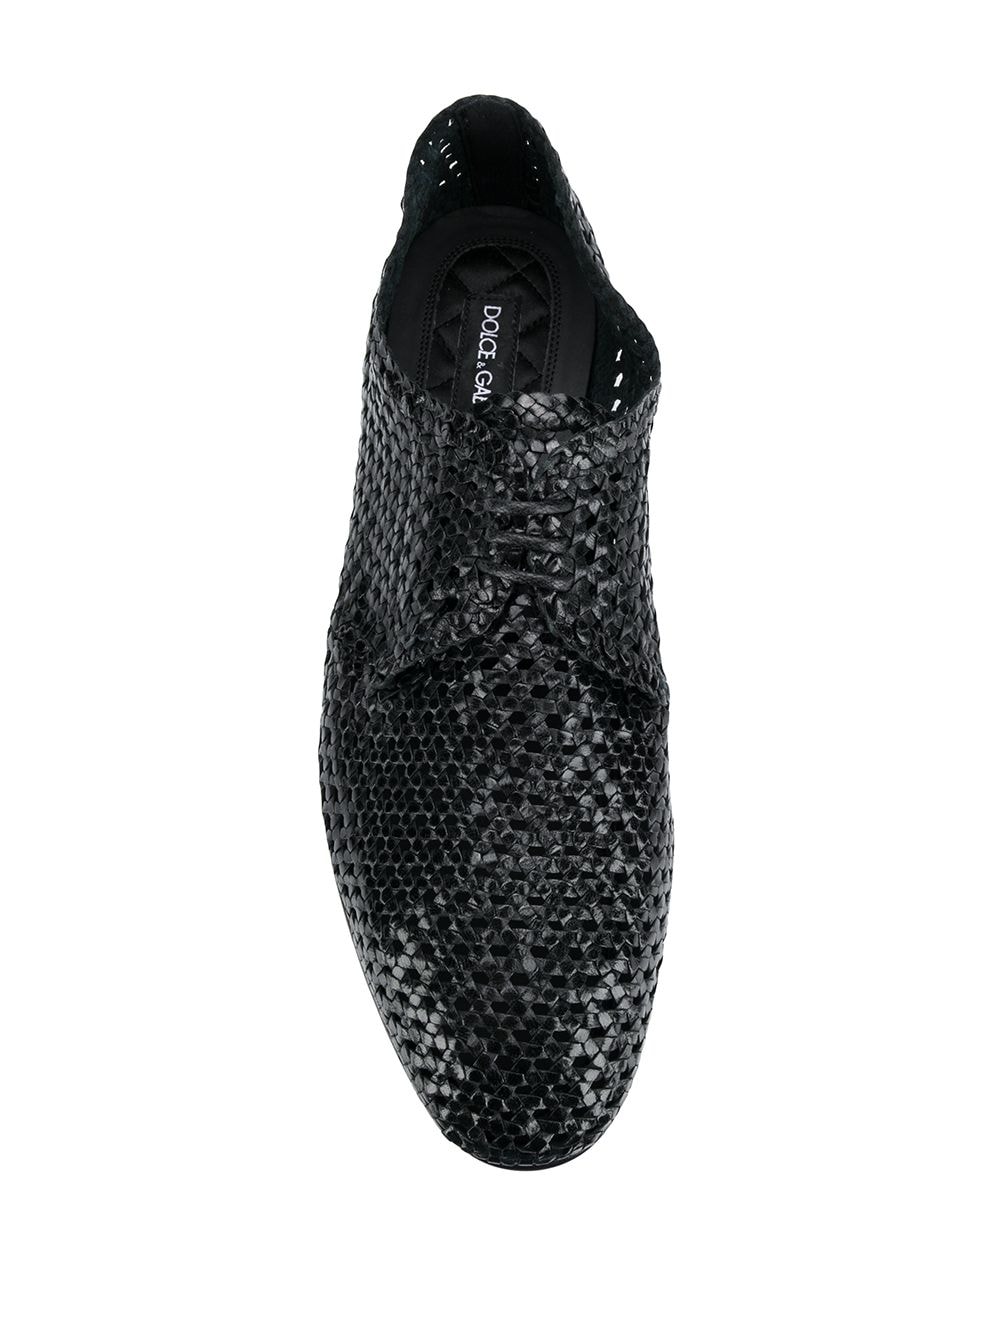 фото Dolce & Gabbana плетеные туфли на шнуровке